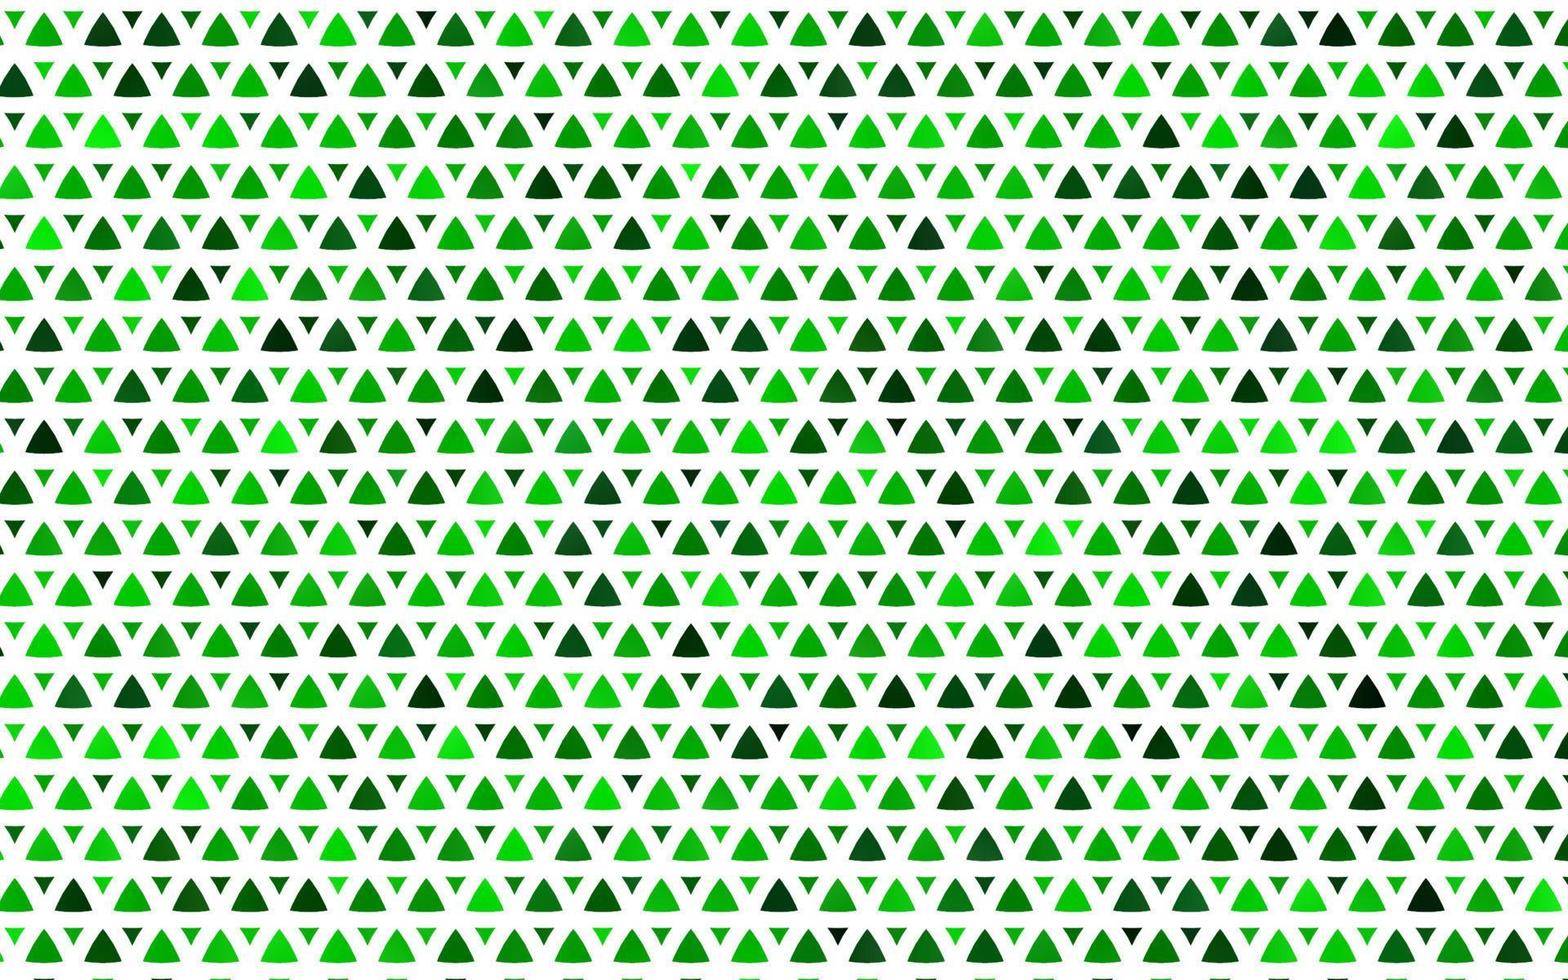 hellgrüner Vektor nahtloser Hintergrund mit Linien, Dreiecken.